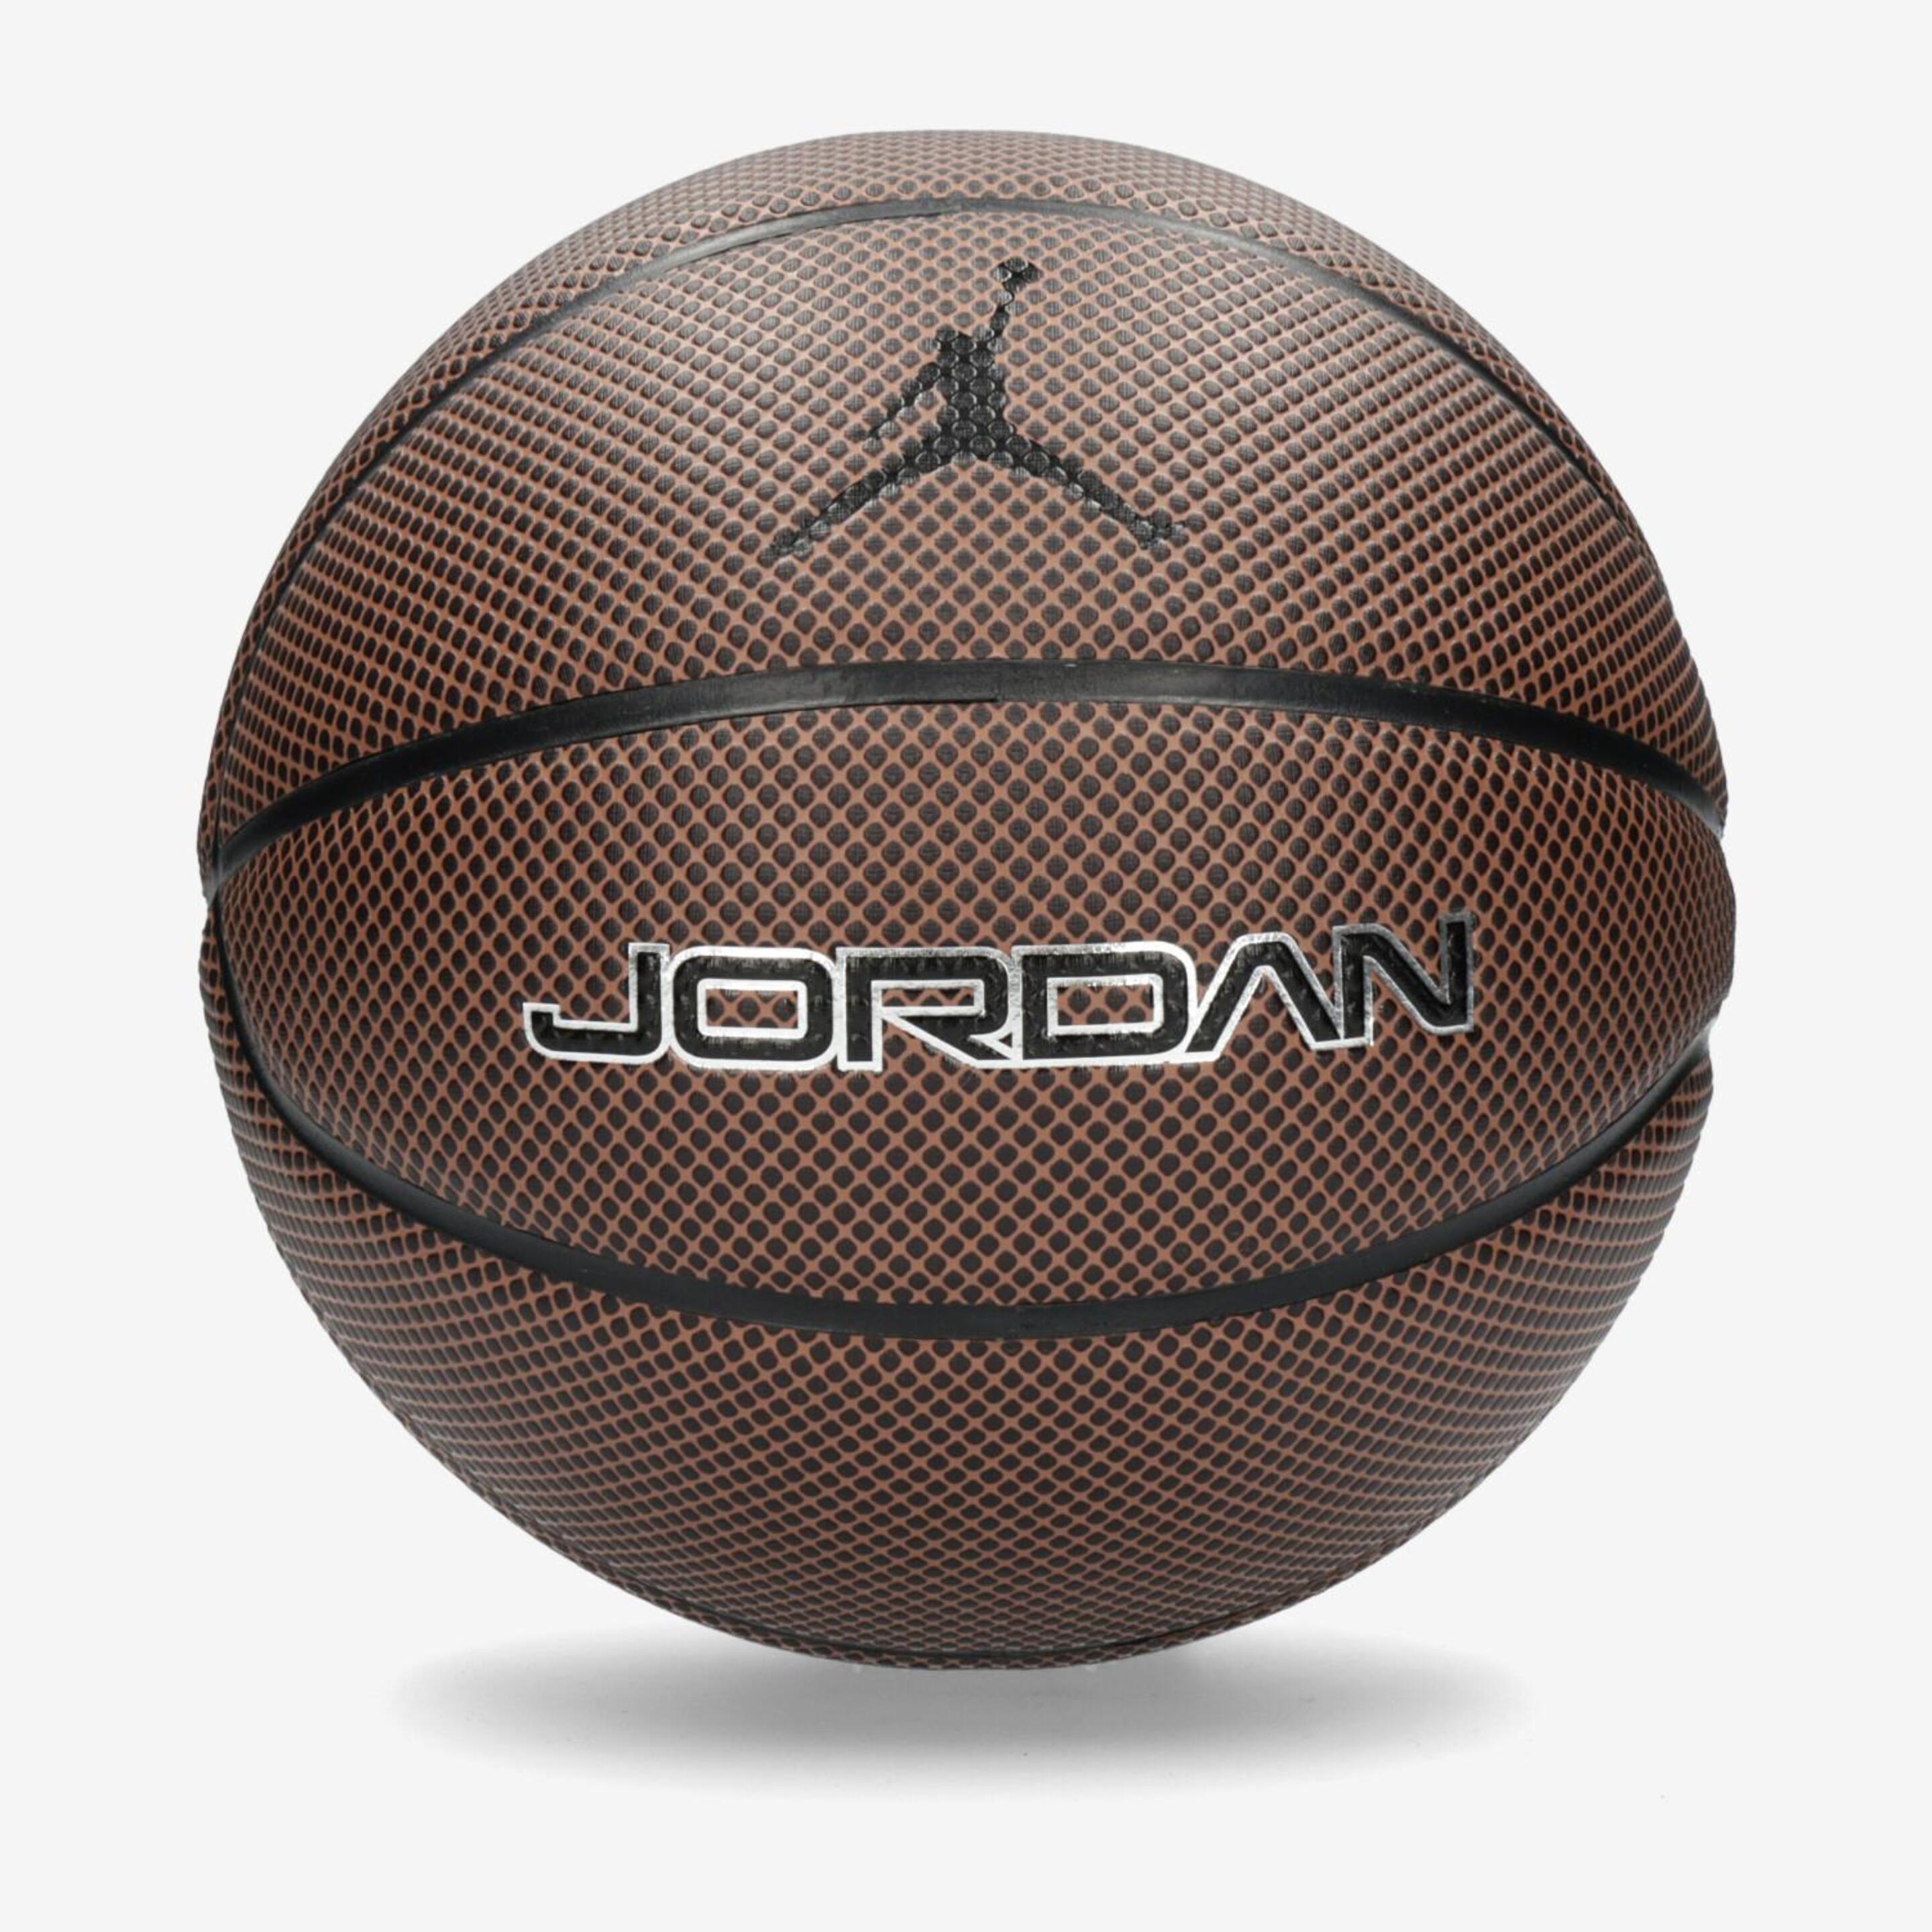 Balon Nike Jordan Legacy